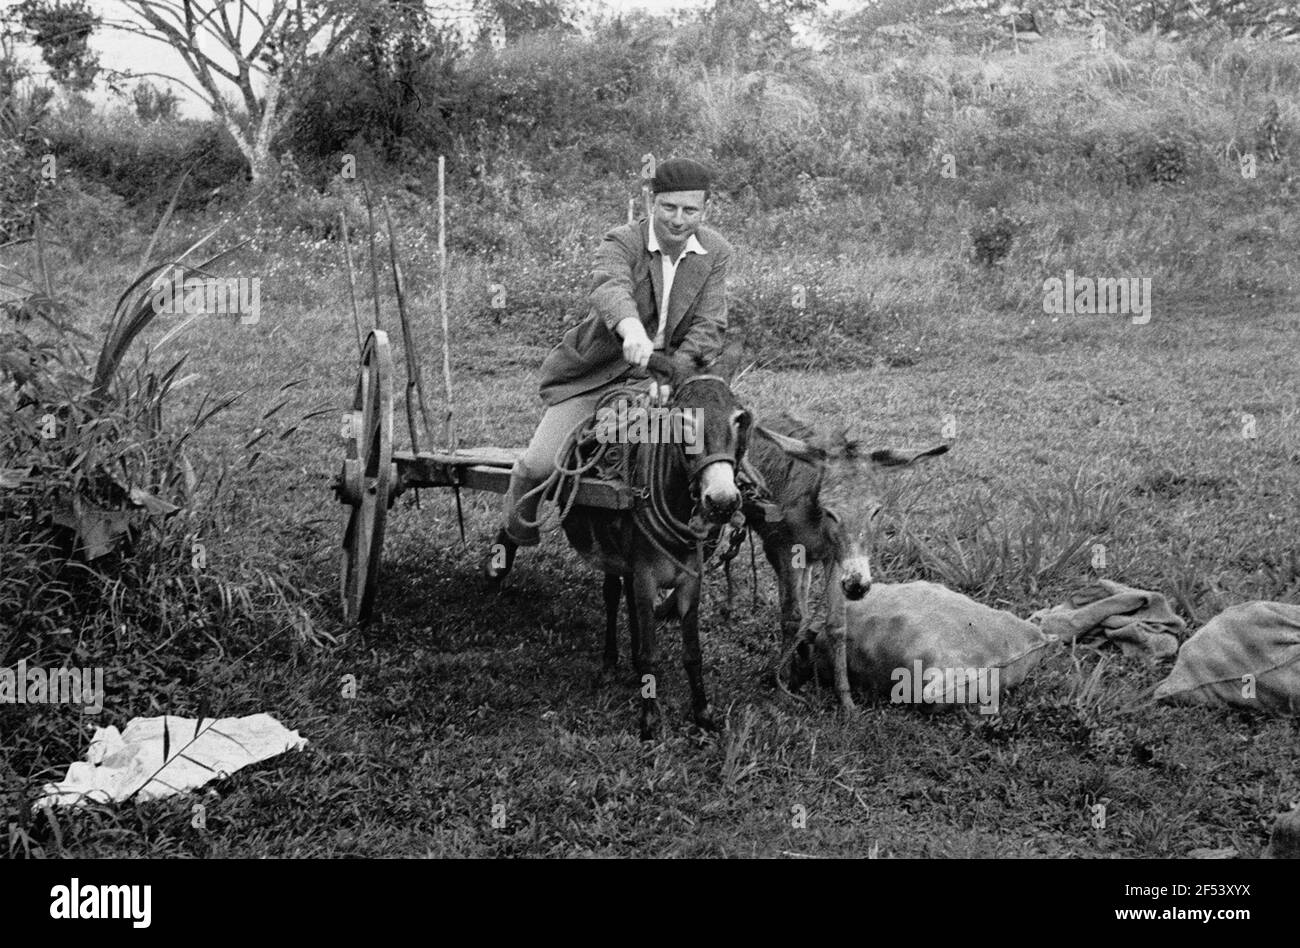 Photos de voyage Caraïbes. Trinidad. Le compagnon de voyage du photographe sur un chariot d'âne Banque D'Images